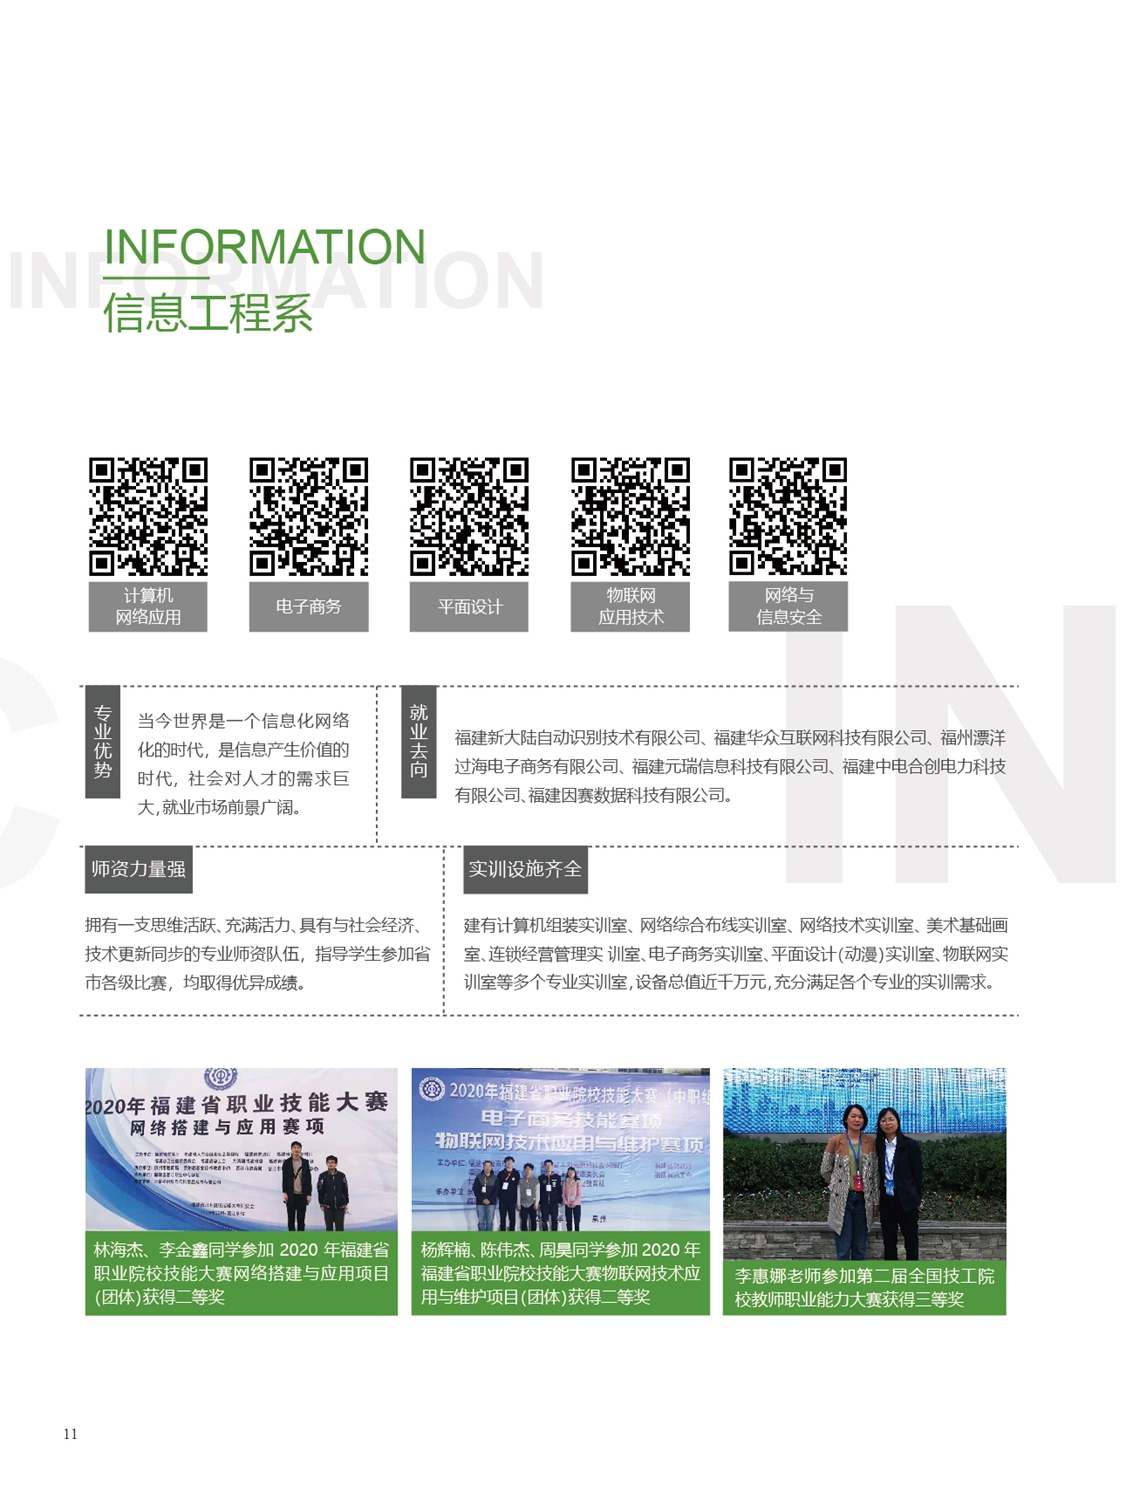 福州第一技师学院2021年招生手册(图12)